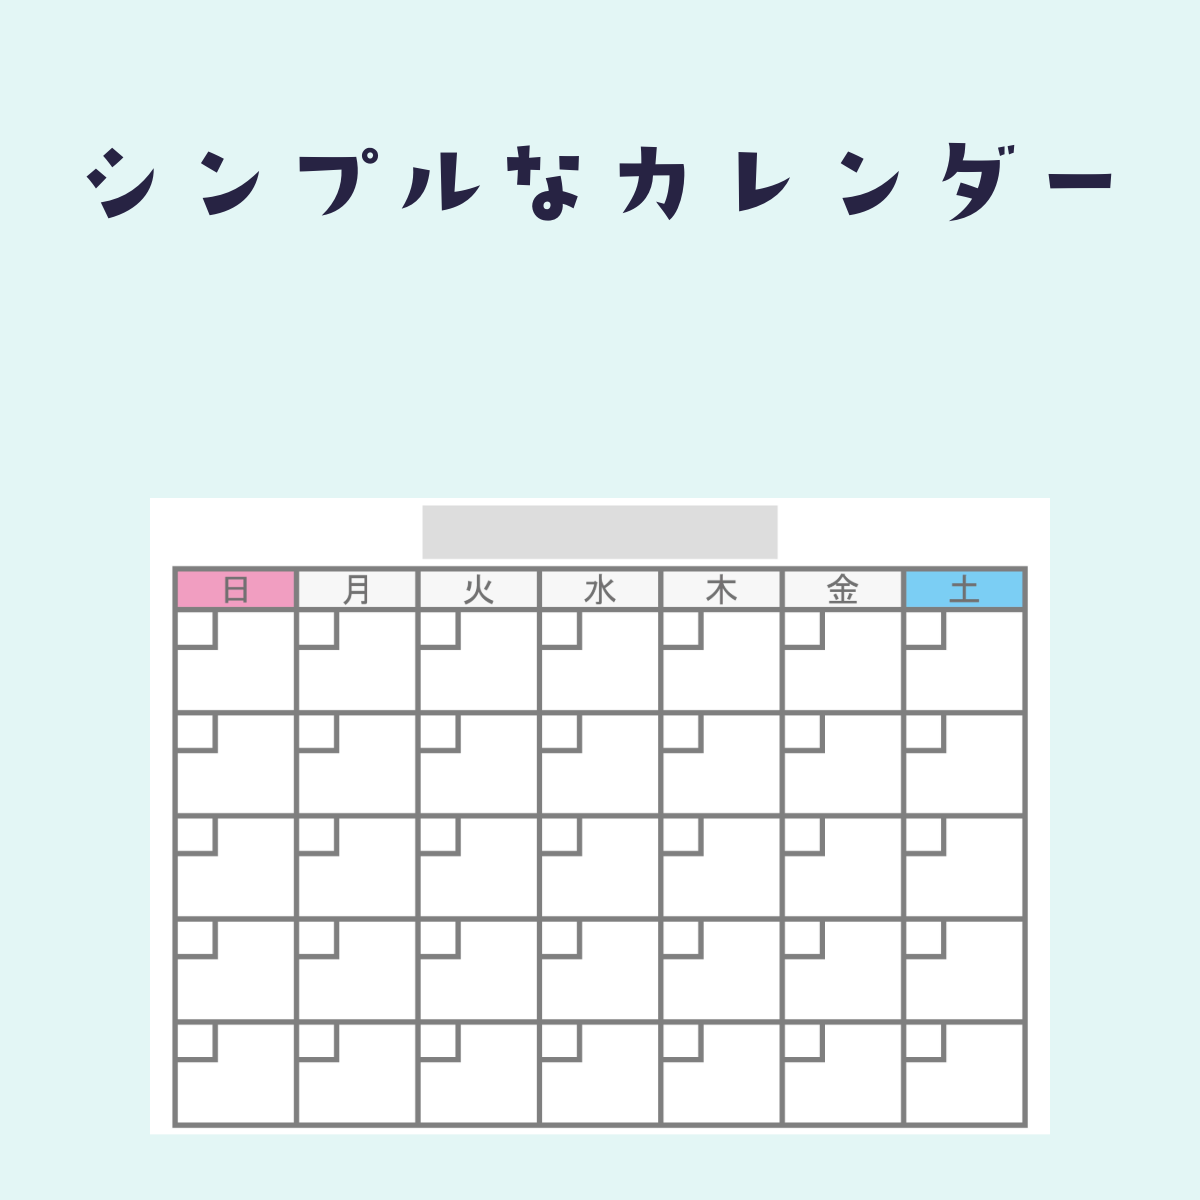 シンプルな カレンダー枠 の フリー素材